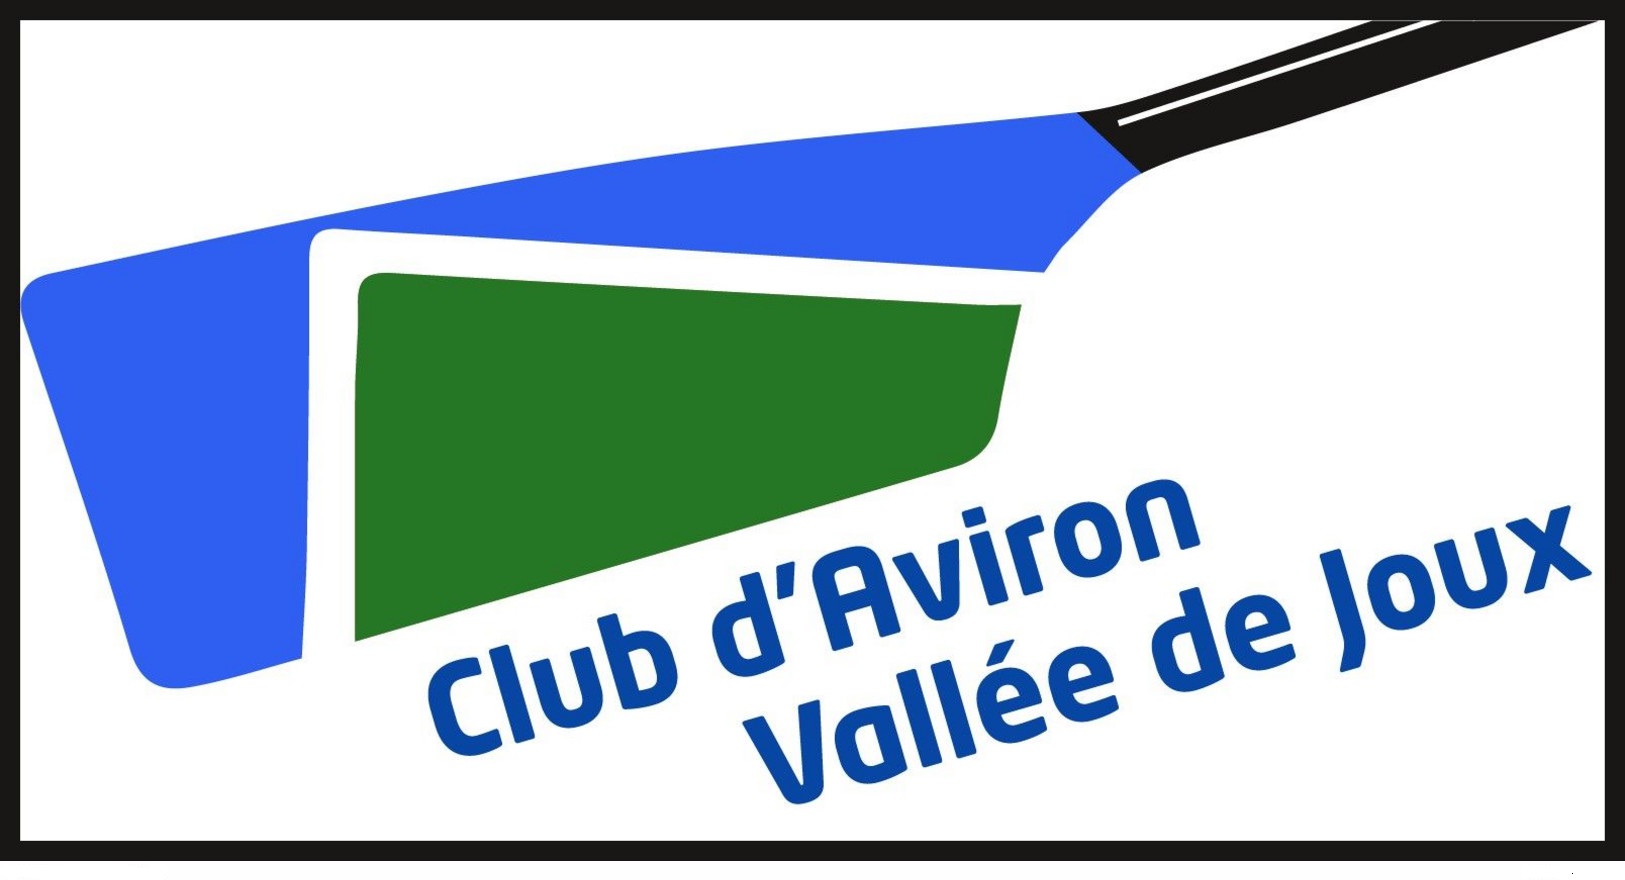 Sticker SUI Club dAviron Vallee de Joux founded 2010